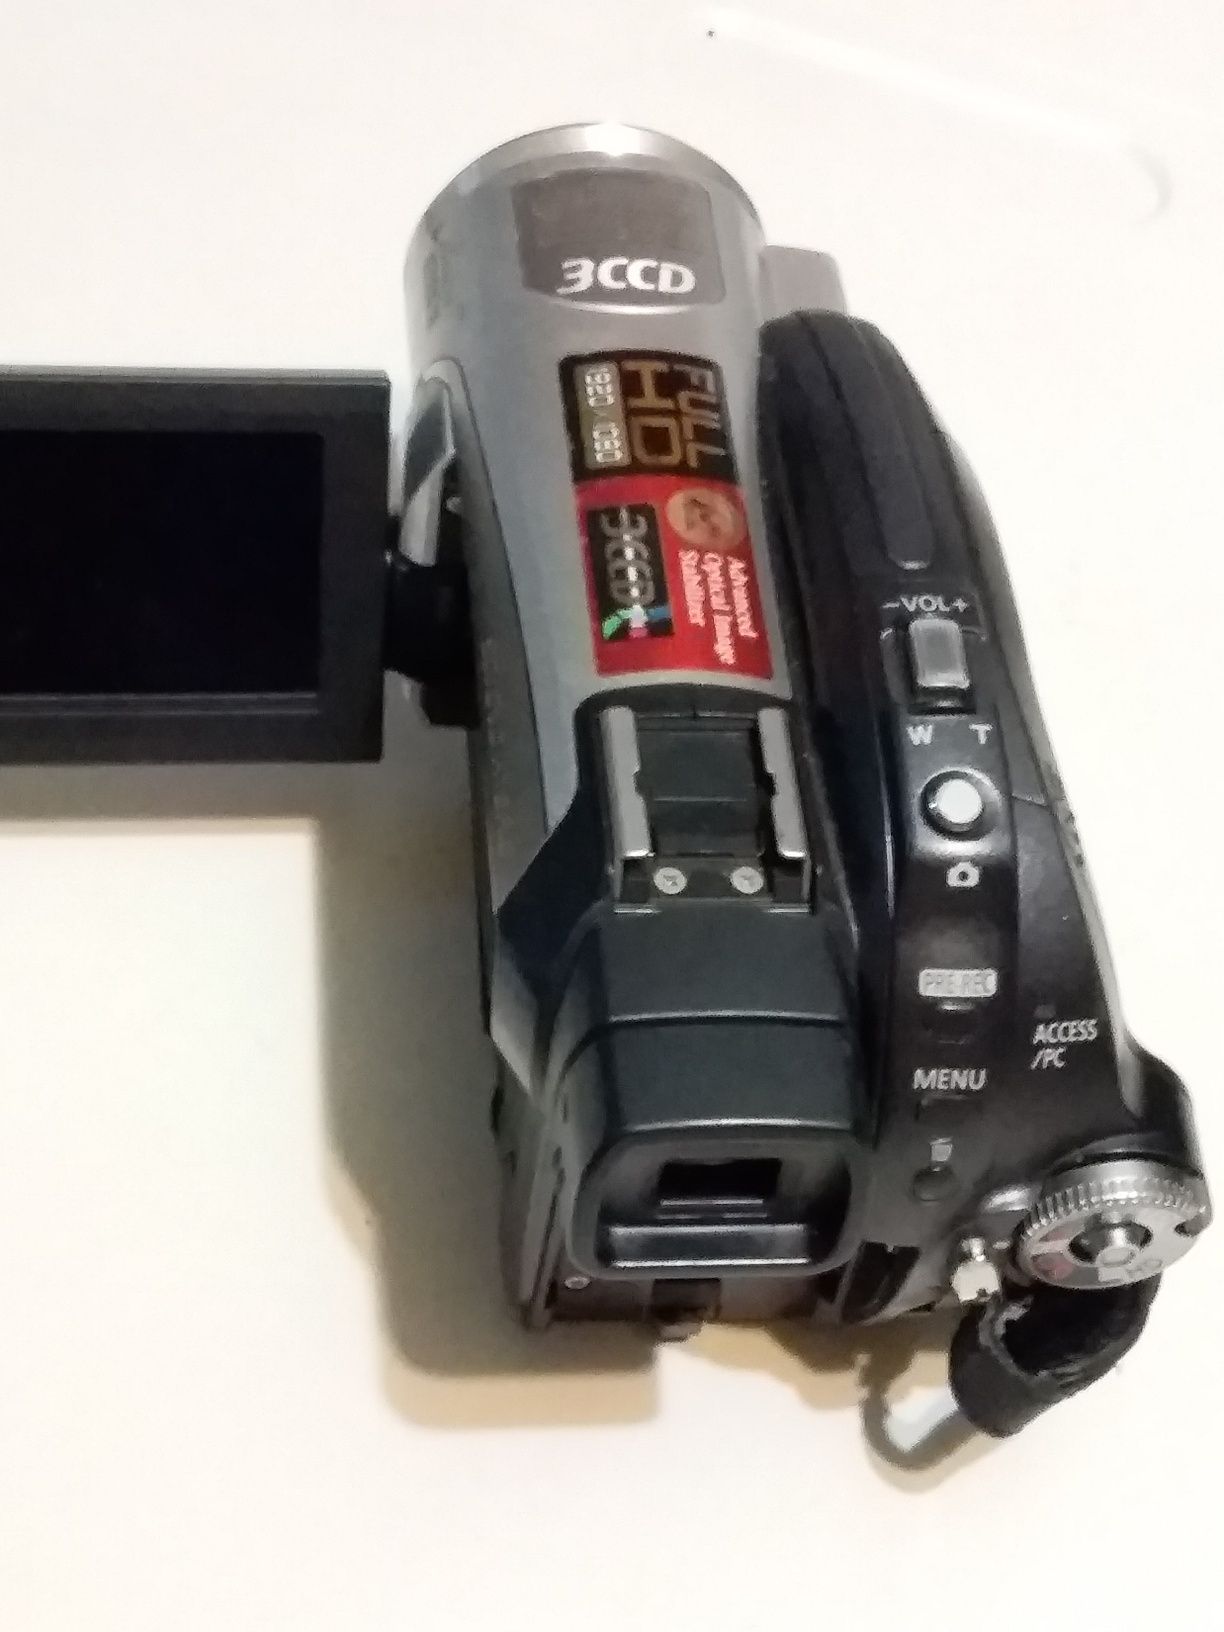 Видеокамера PANASONIK ,ful hd ,3ccd, снимает на сд карту памяти